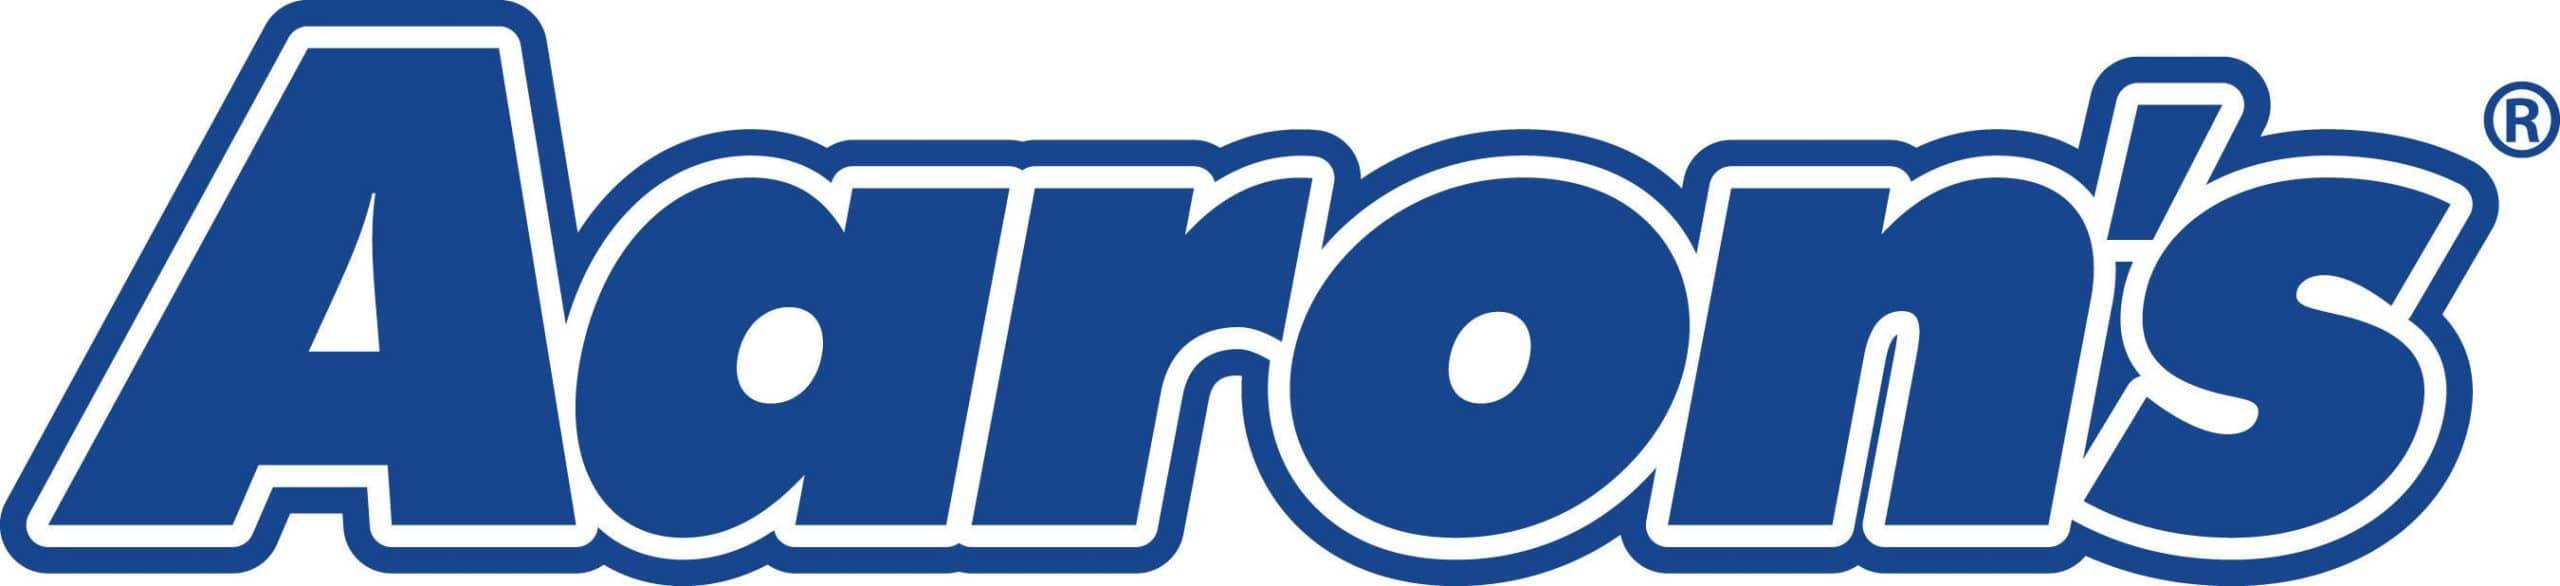 logotipo de aarons